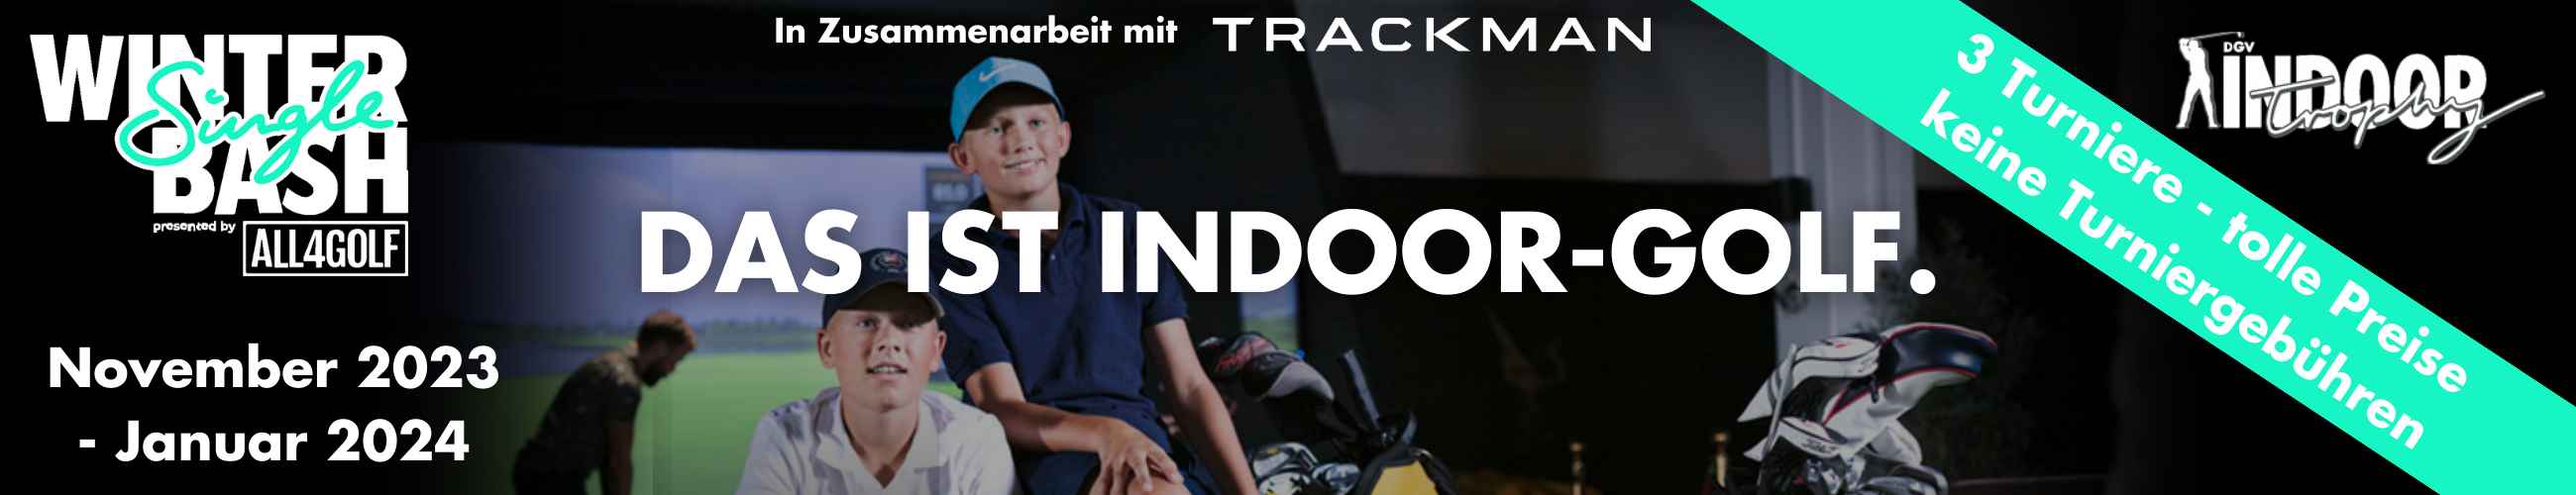 IndoorGolf Garmisch-Partenkirchen, Golfen, Trainieren und Fit bleiben